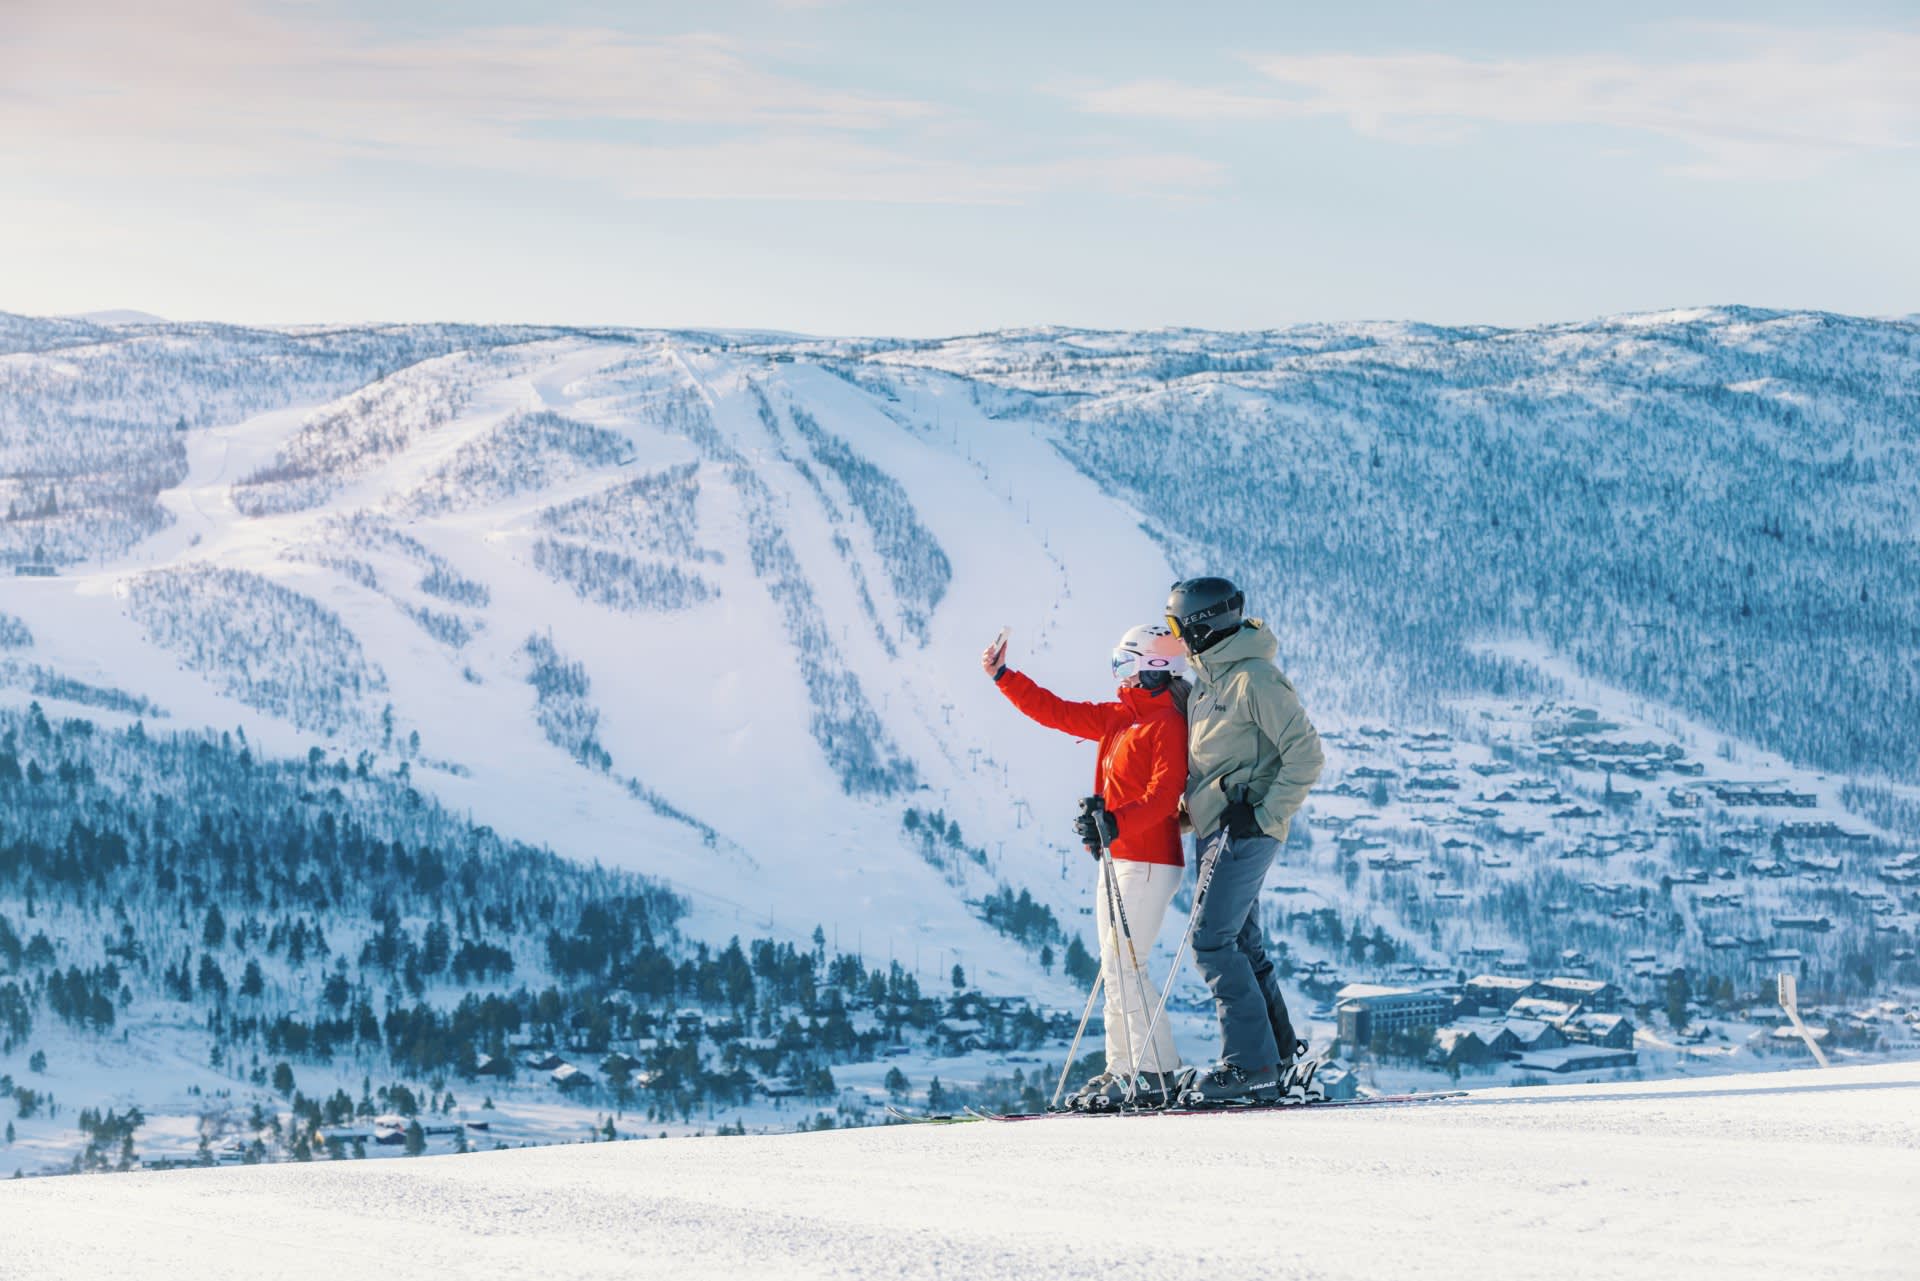 Geilo er kåret til "Norway's Best Ski Resort" for 5. året på rad. Foto: Paul Lockhart